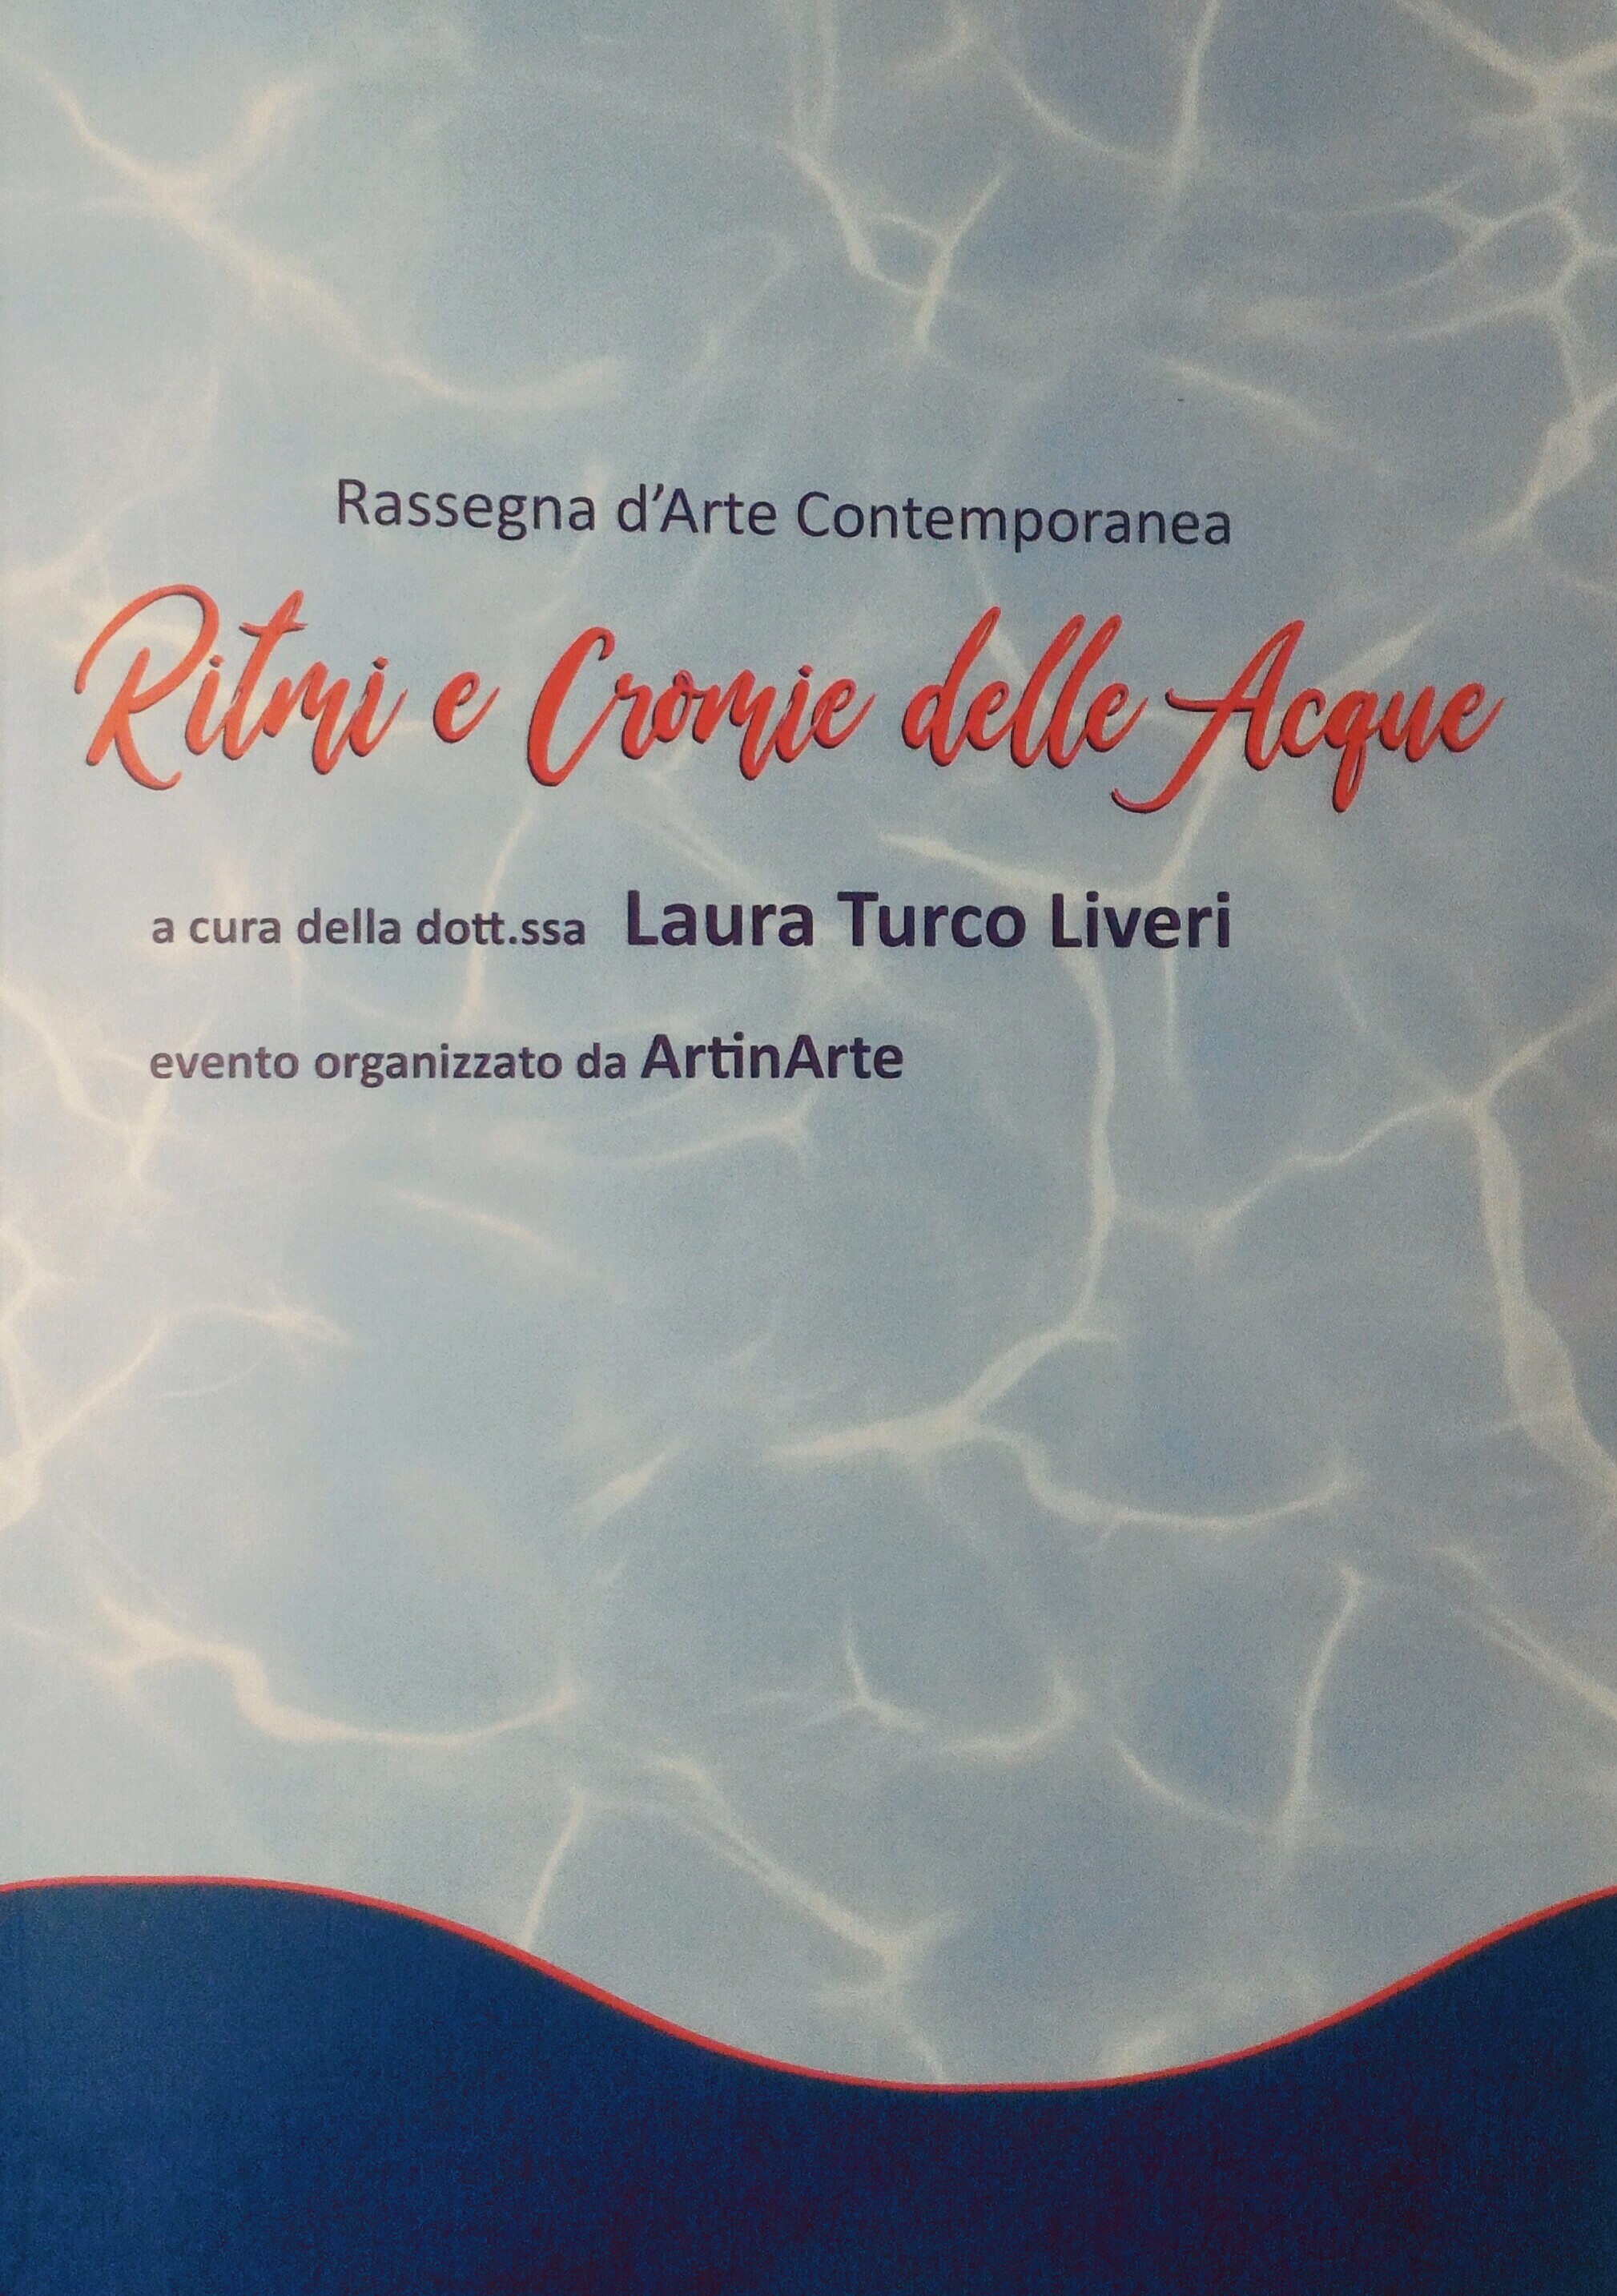 Ritmi e Cromie delle Acque - Rassegna d'Arte Contemporanea a cura della dott.ssa Laura Turco Liveri